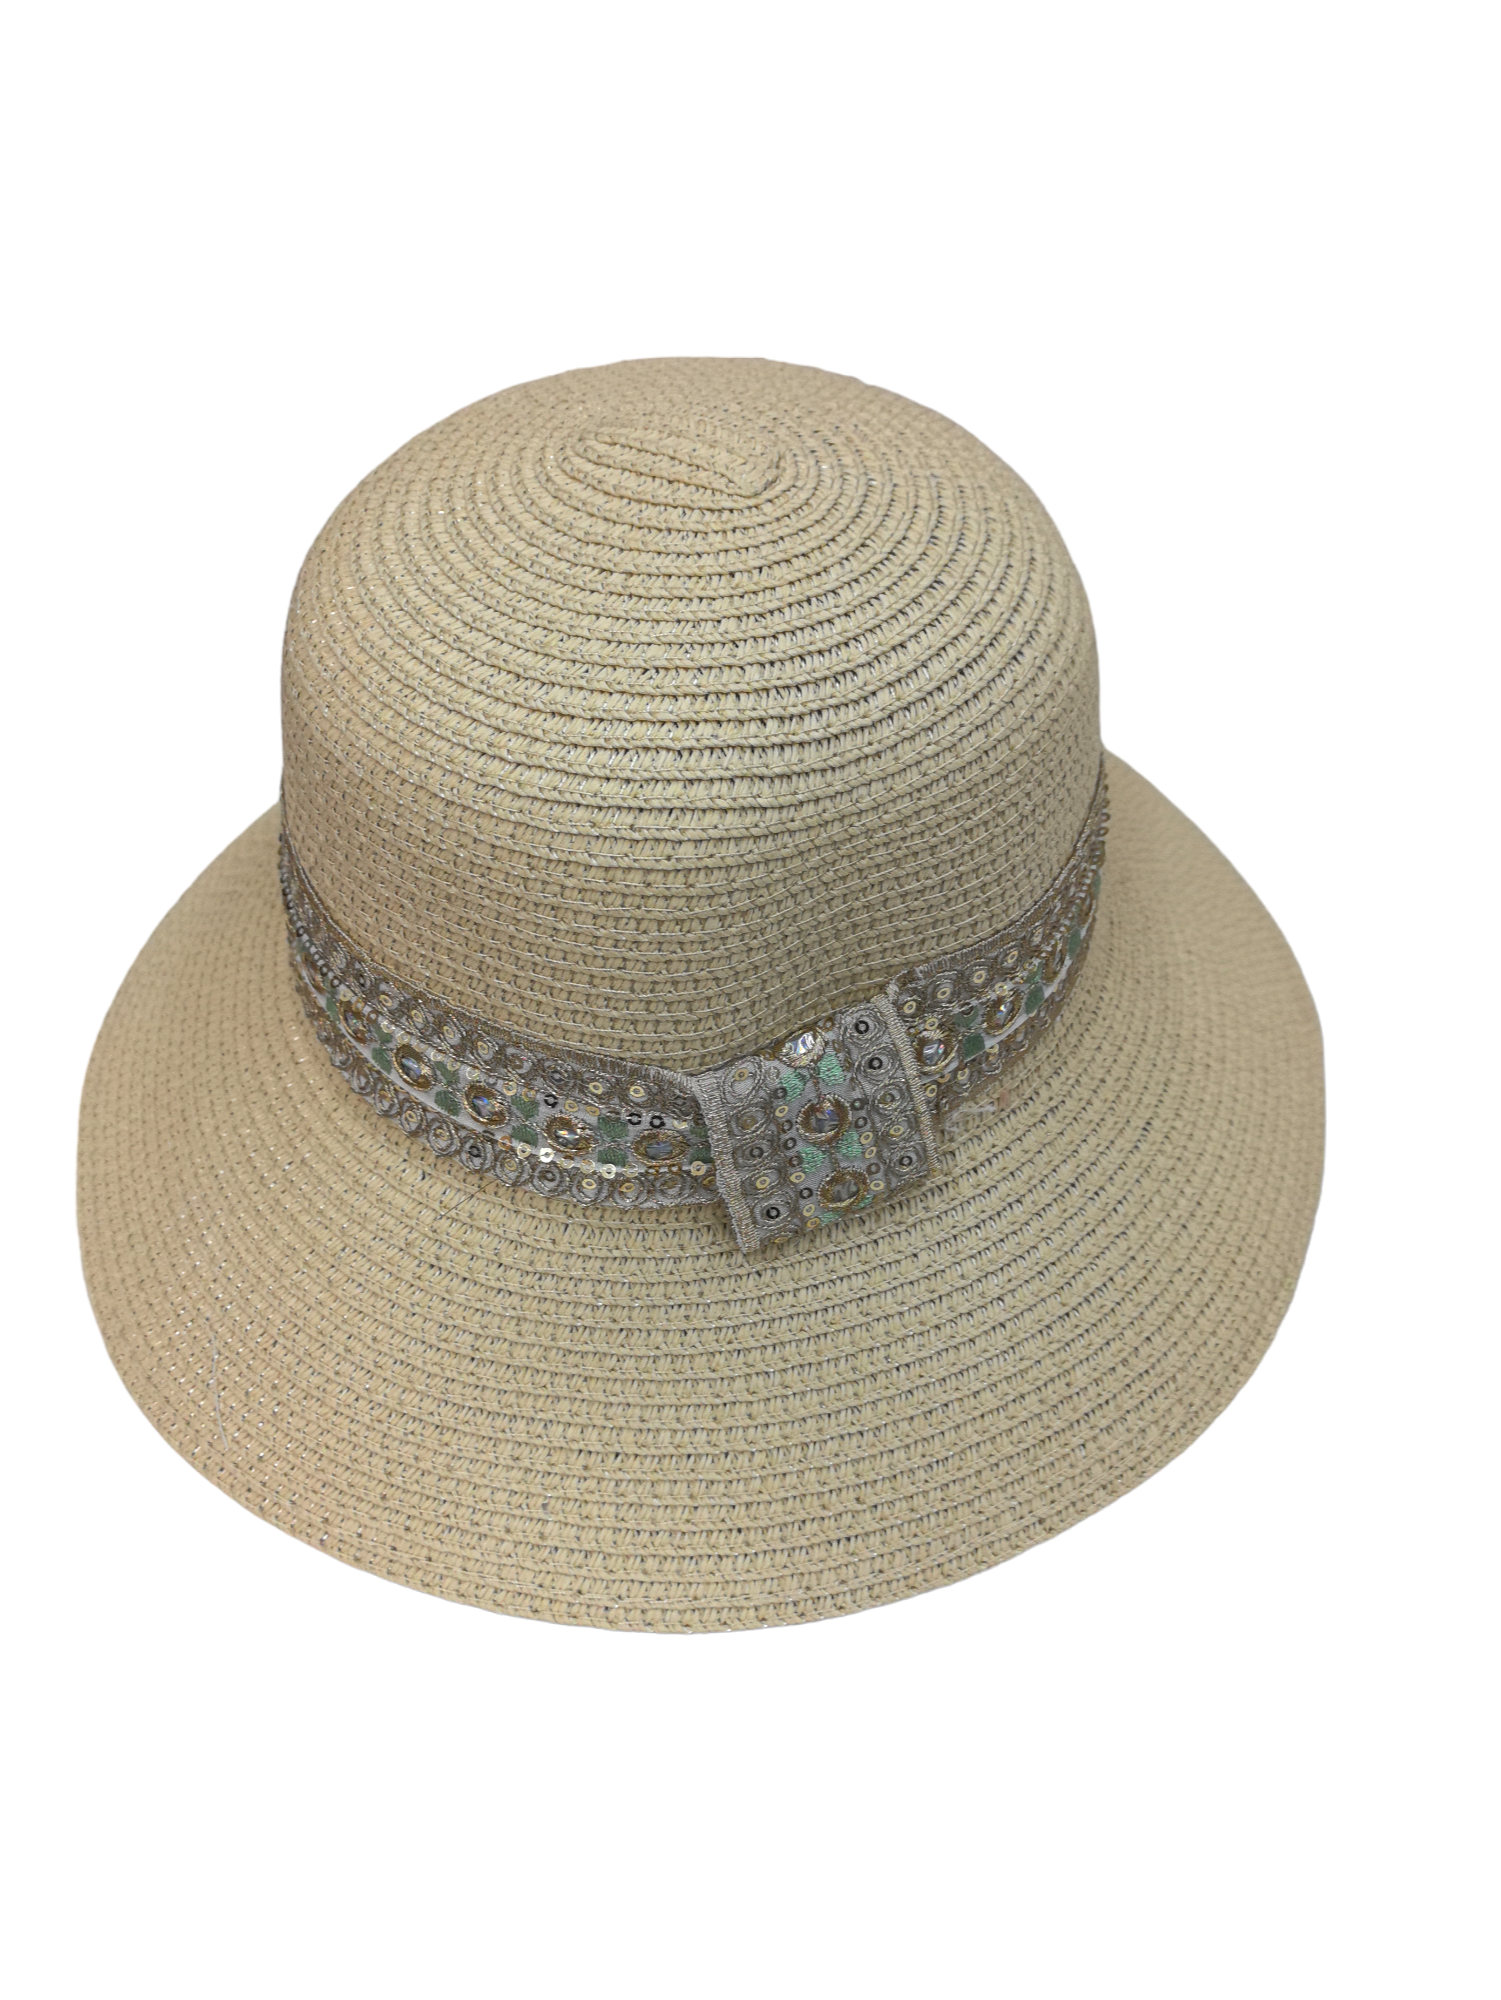 Chapeau de paille femme ruban Paillettes (x12)